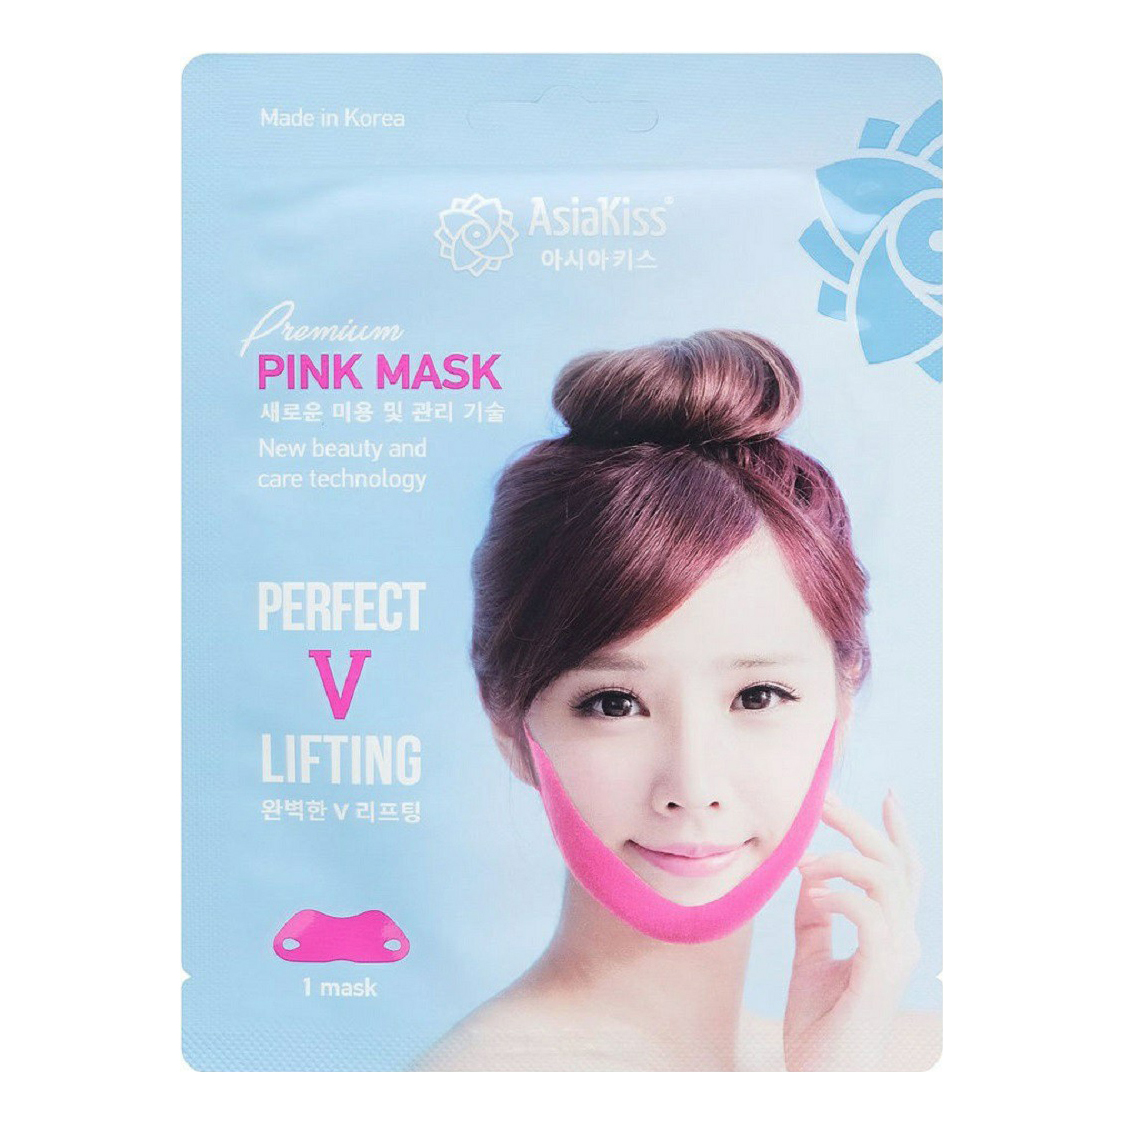 Маски perfect. Asia Kiss (Корея) ak267 perfect v-Lifting Premium Pink Mask корректирующая лифтинг маска. Маска от 2 подбородка perfect Lifting. ASIAKISS корректирующая лифтинг-маска против второго подбородка. Перфект v лифтинг маска для лица.